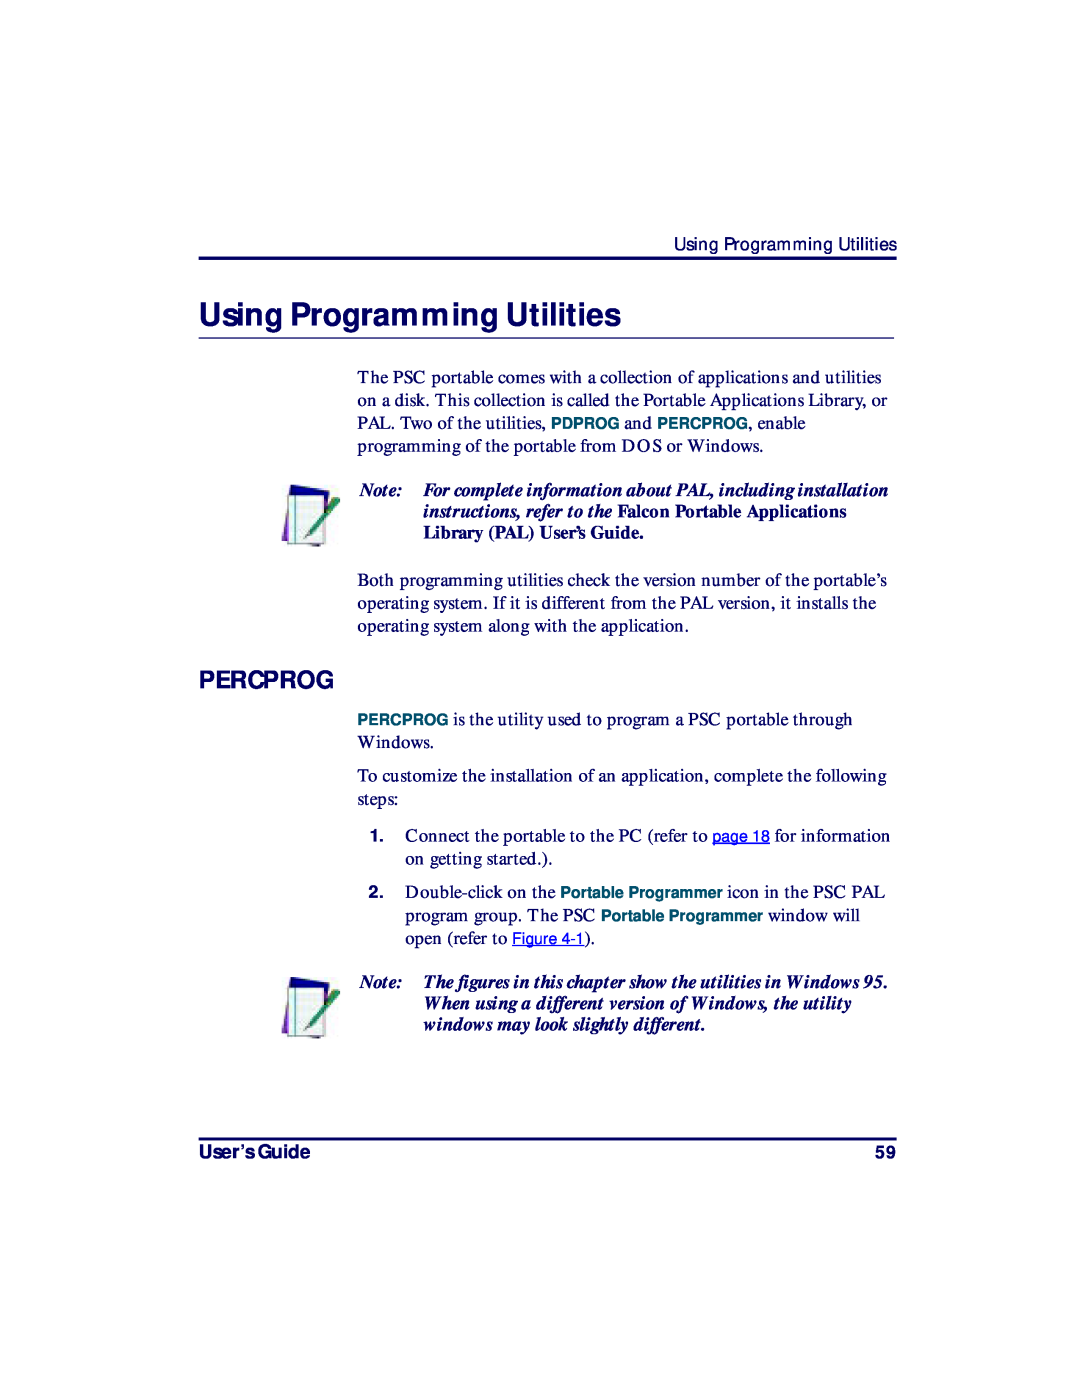 PSC PT2000, TopGun manual Using Programming Utilities, Percprog, User’s Guide 